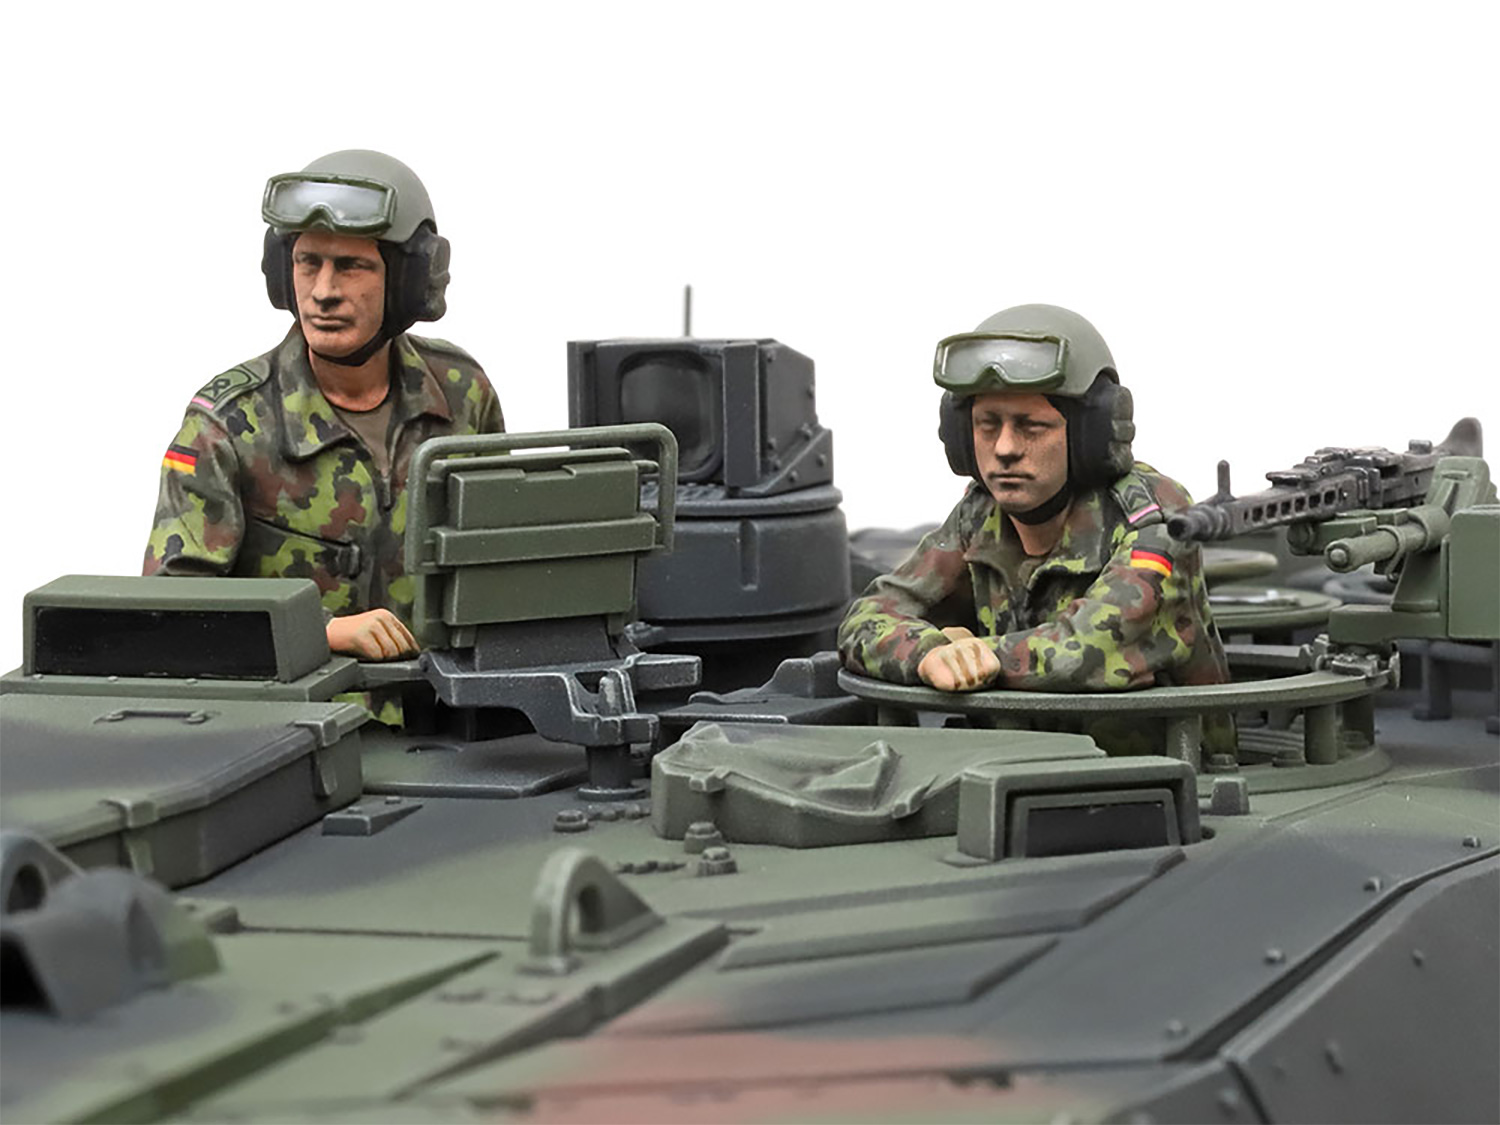 ドイツ連邦軍主力戦車 レオパルト 2 A7V プラモデル (タミヤ 1/35 ミリタリーミニチュアシリーズ No.35387) 商品画像_2